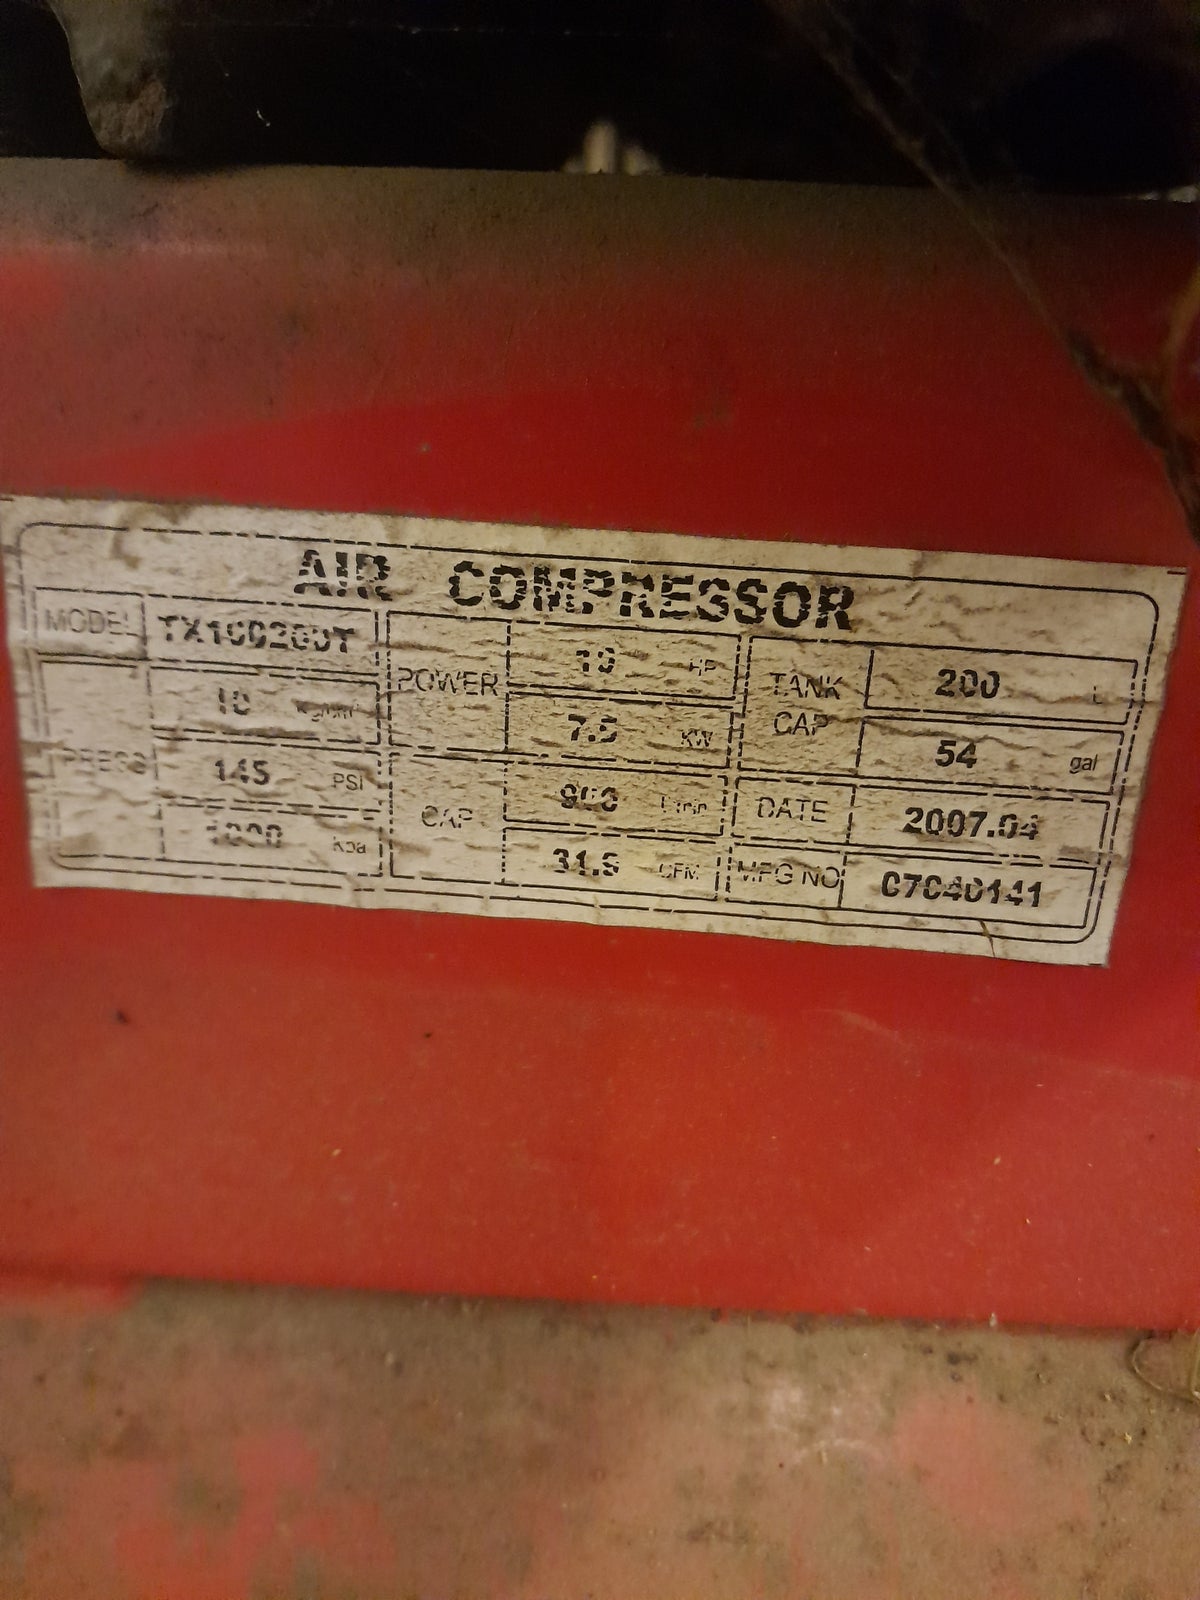 Kompressor 10hk, P lindberg